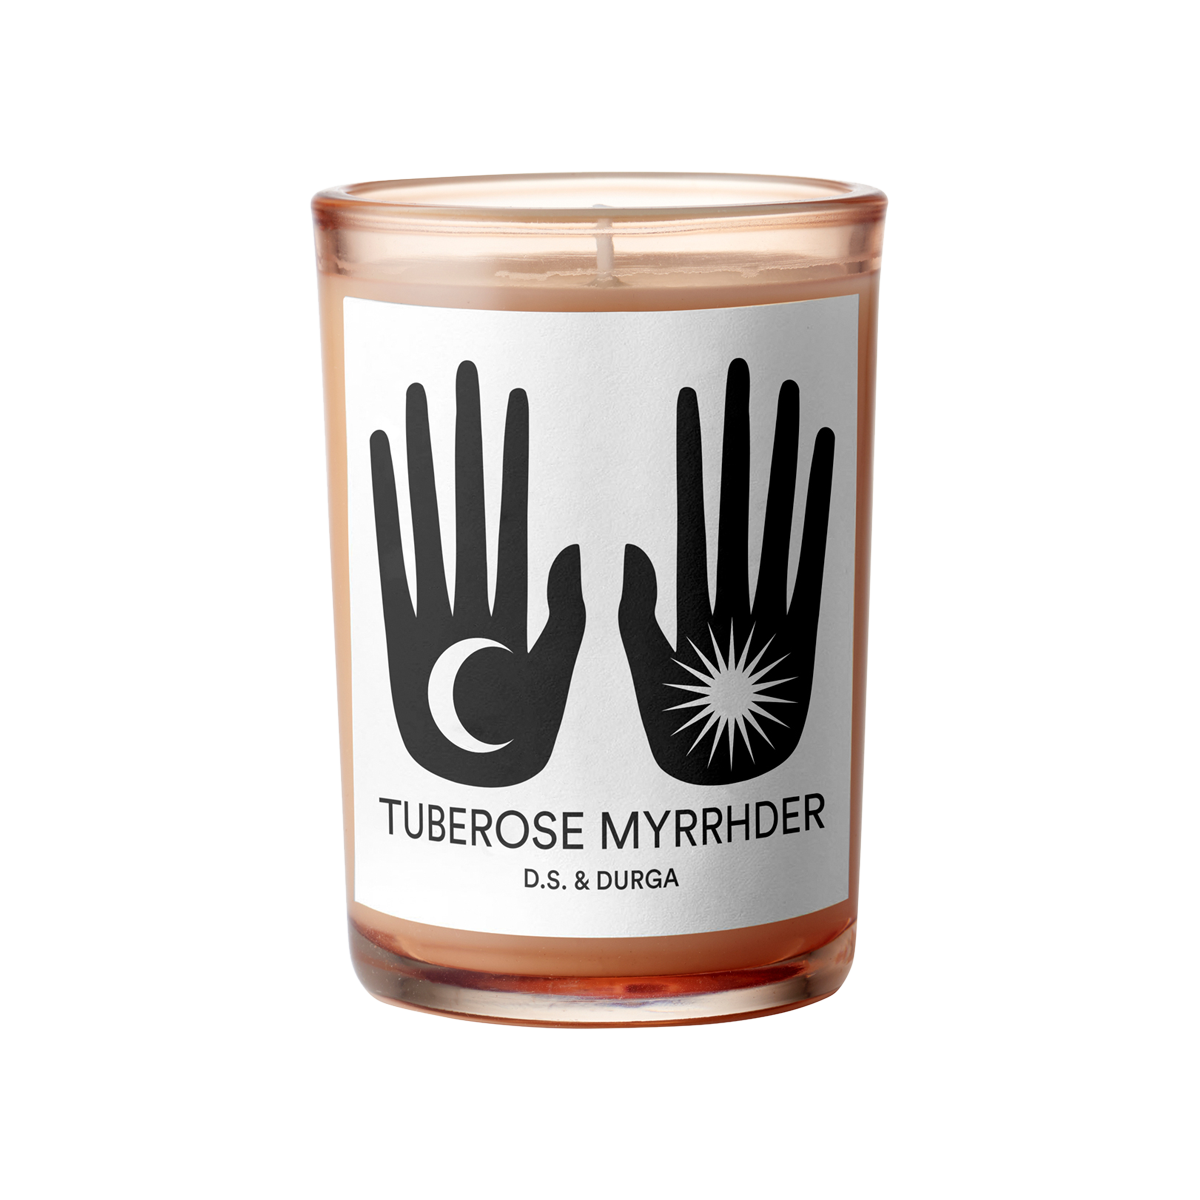 D.S. & DURGA - Tuberose Myrrhder Candle